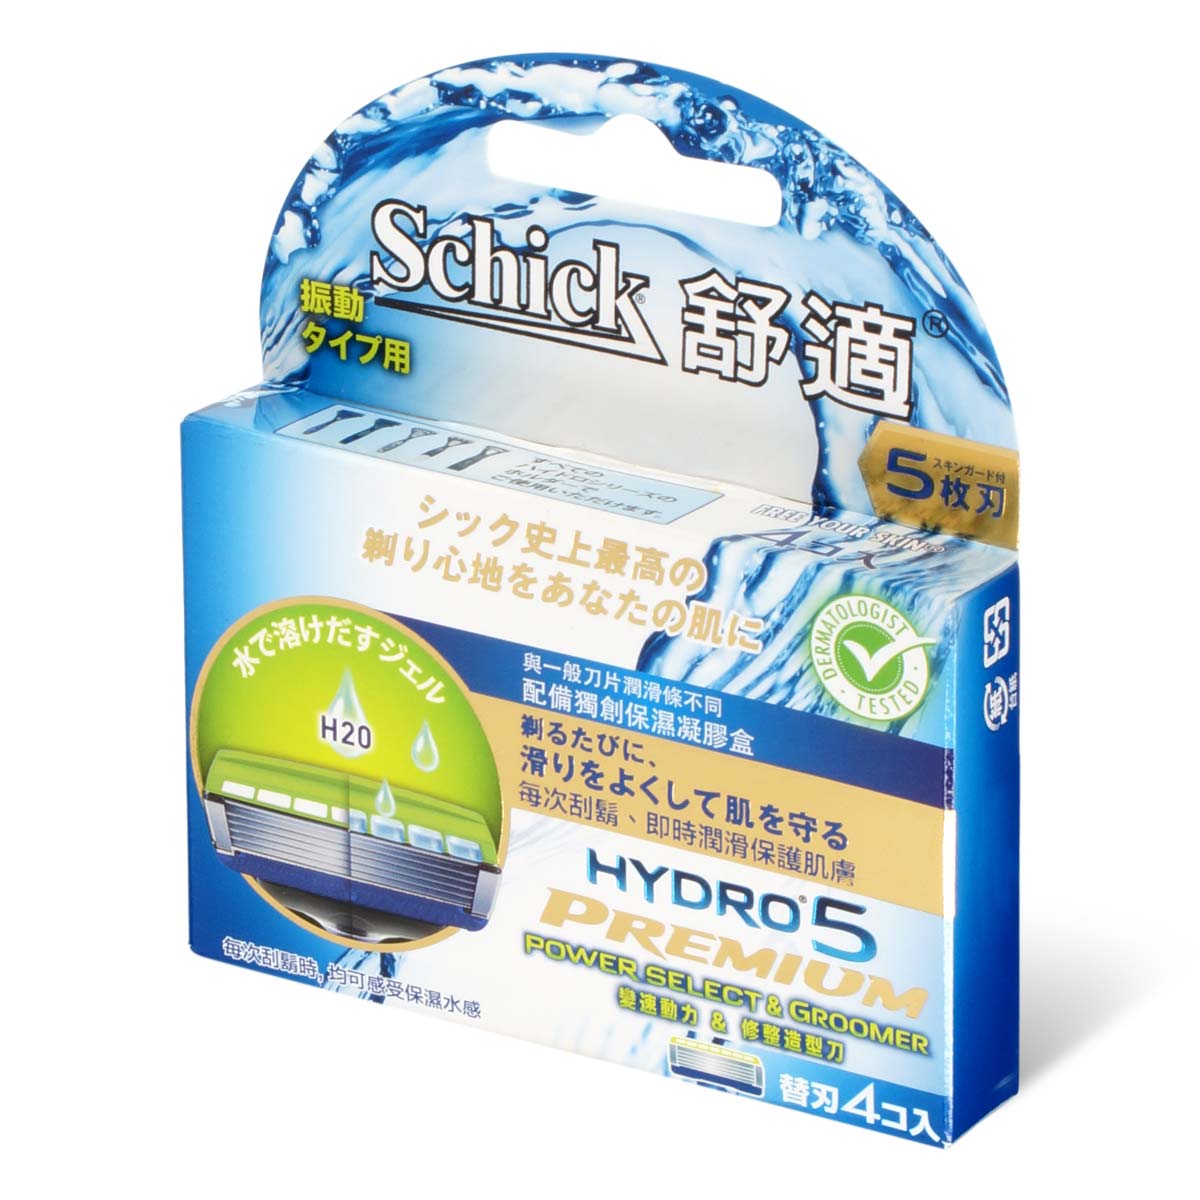 Schick 舒适 Hydro5 Power Select & Groomer 变速动力 & 修整造型刀补充刀片 4 片-p_1